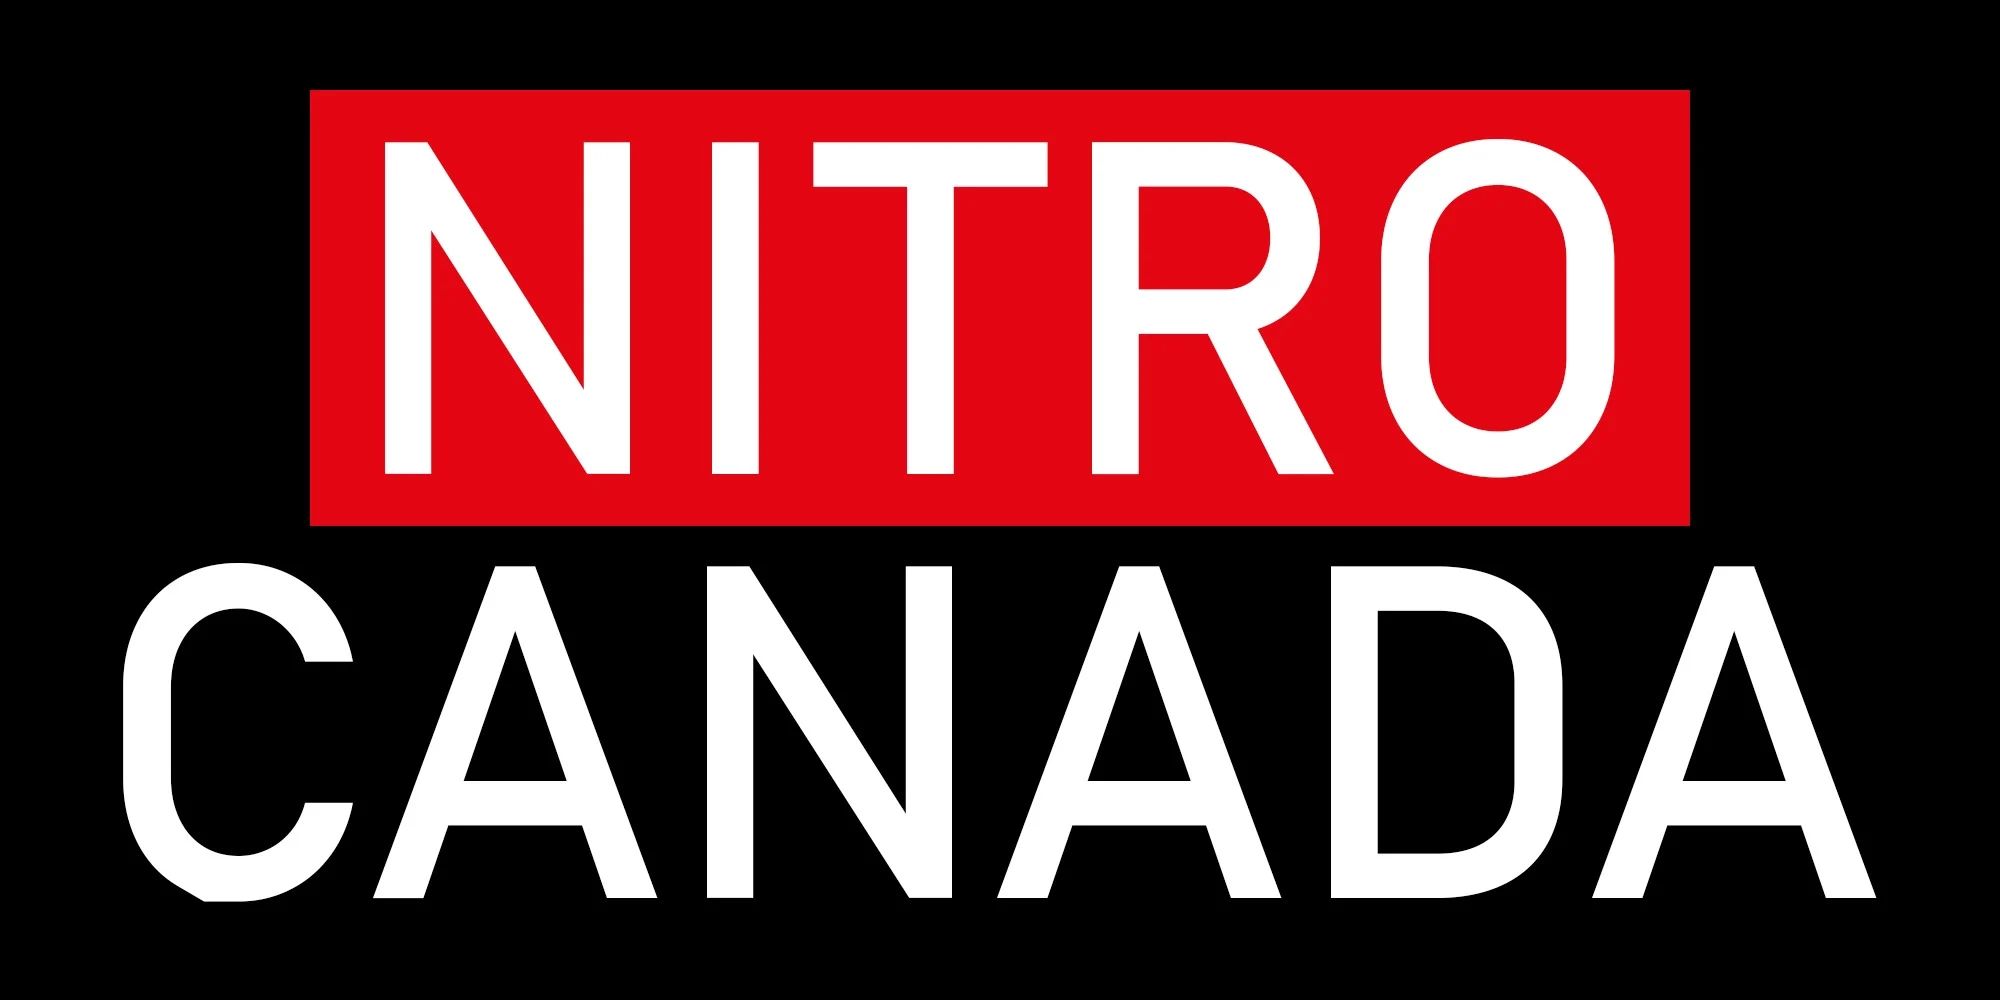 Brand: Nitro Canada